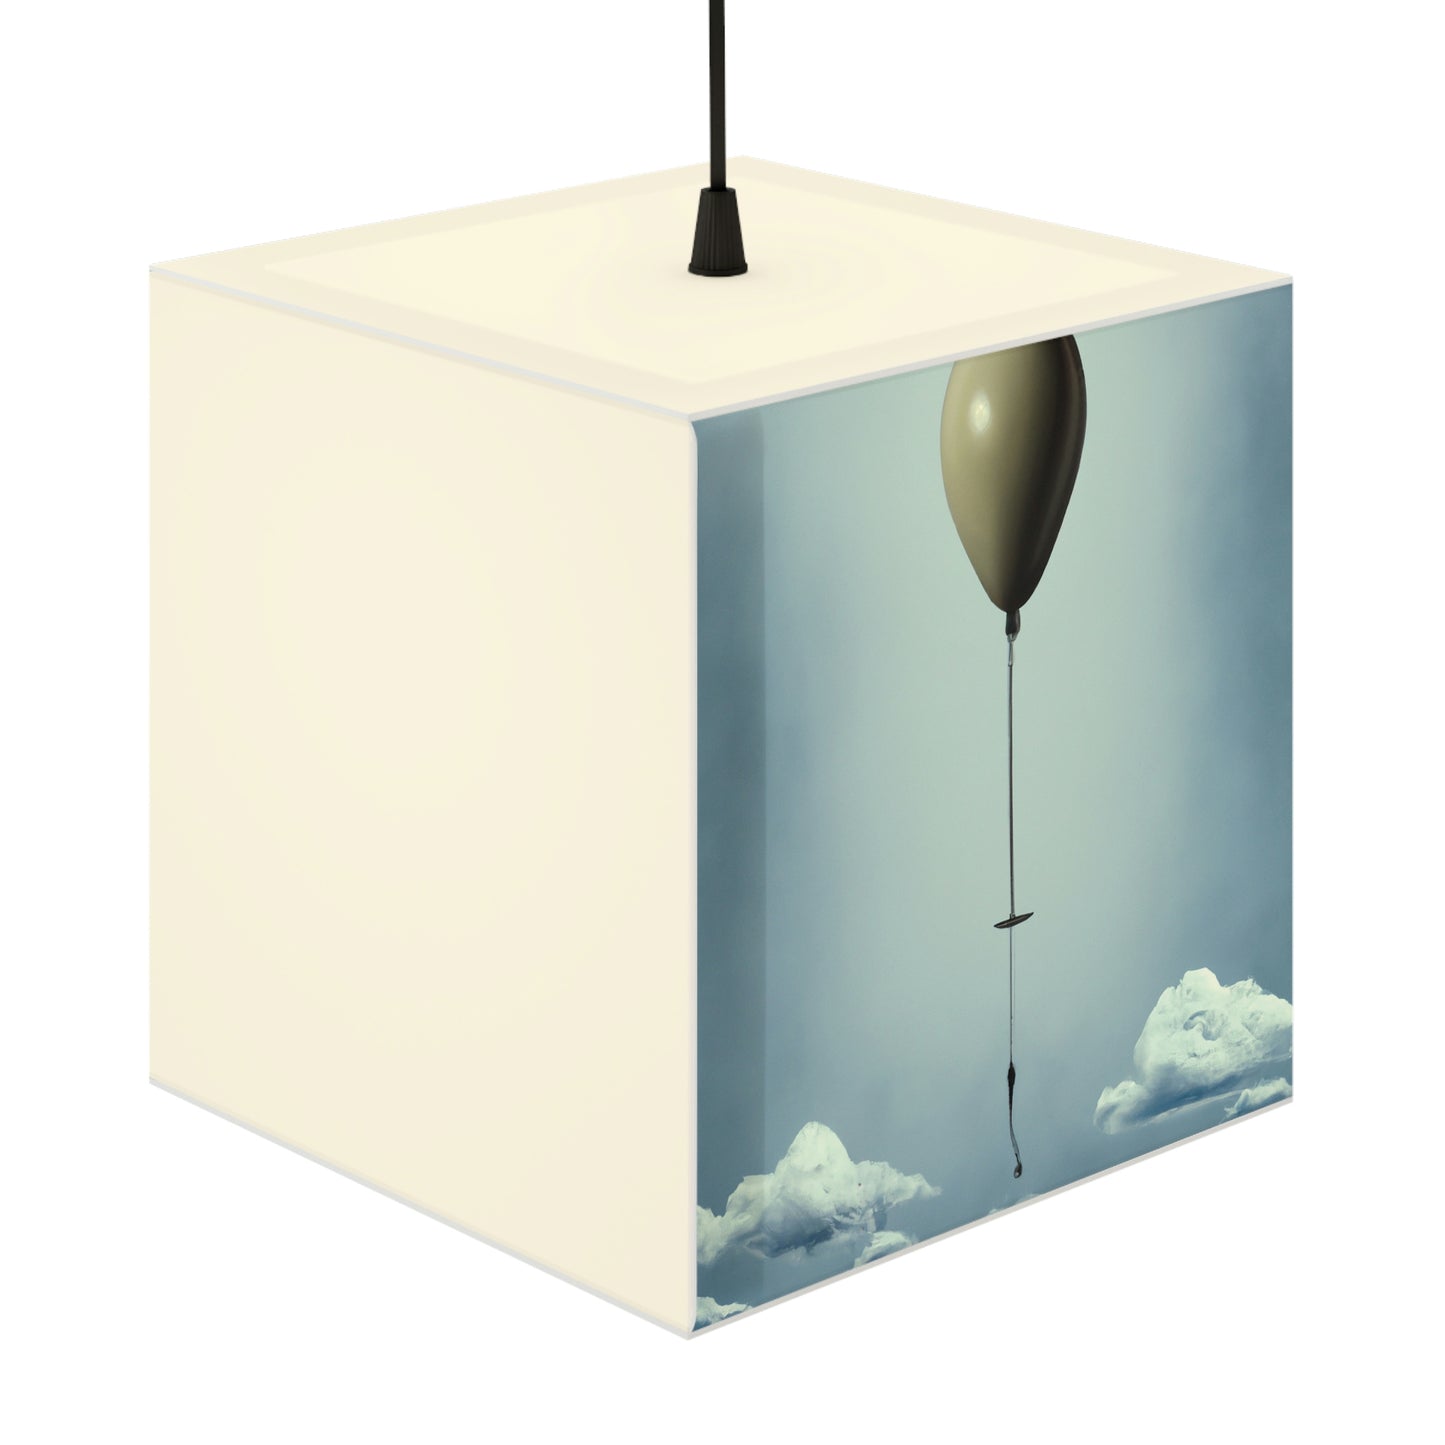 "A Wishful Flight" - The Alien Light Cube Lamp